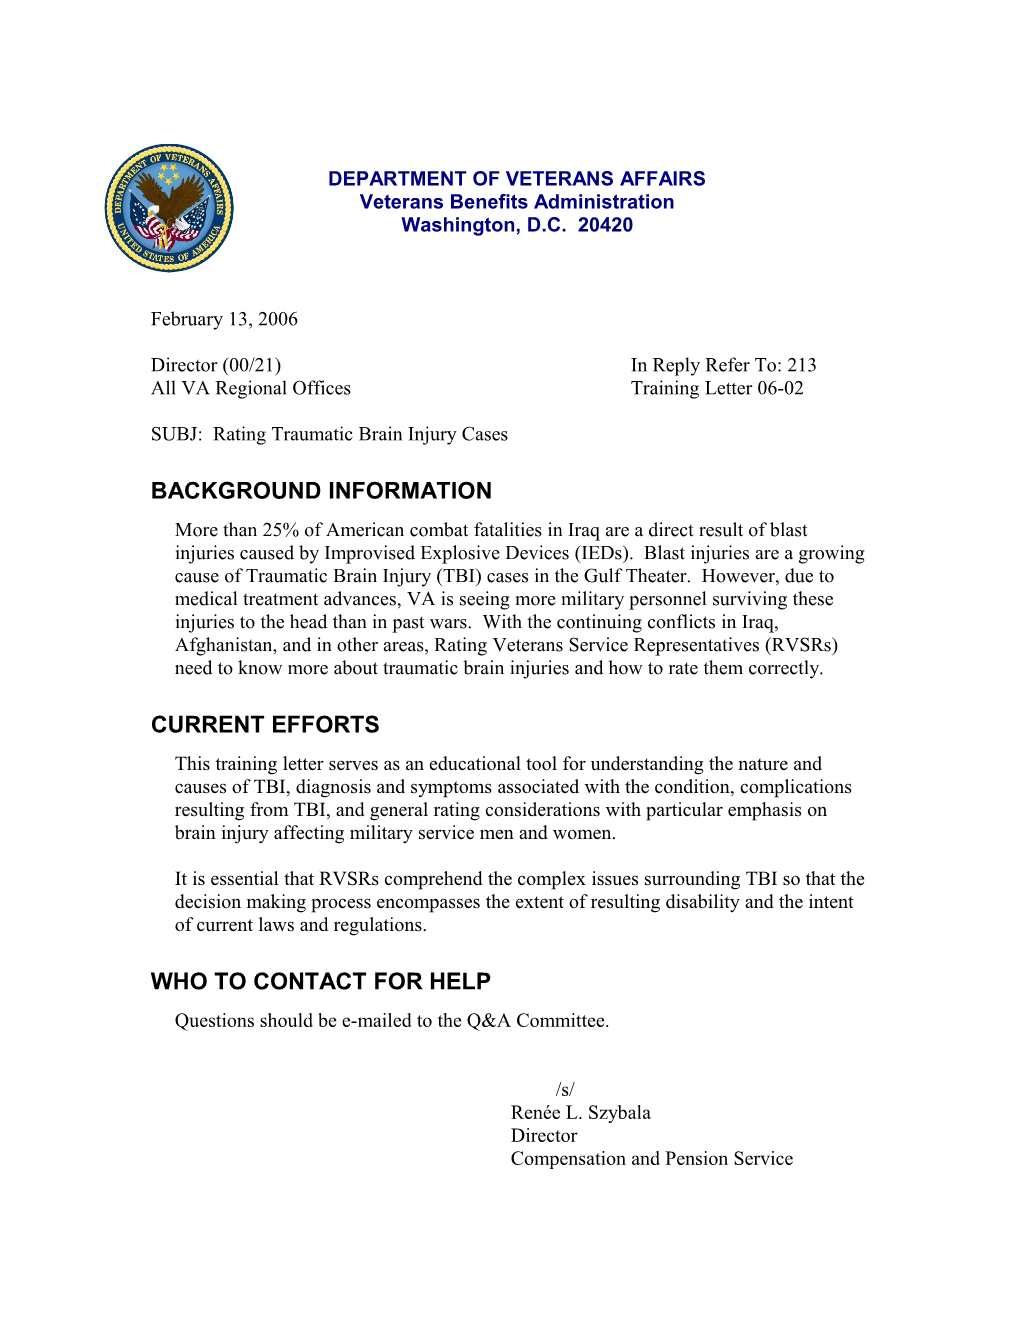 All VA Regional Officestraining Letter 06-02